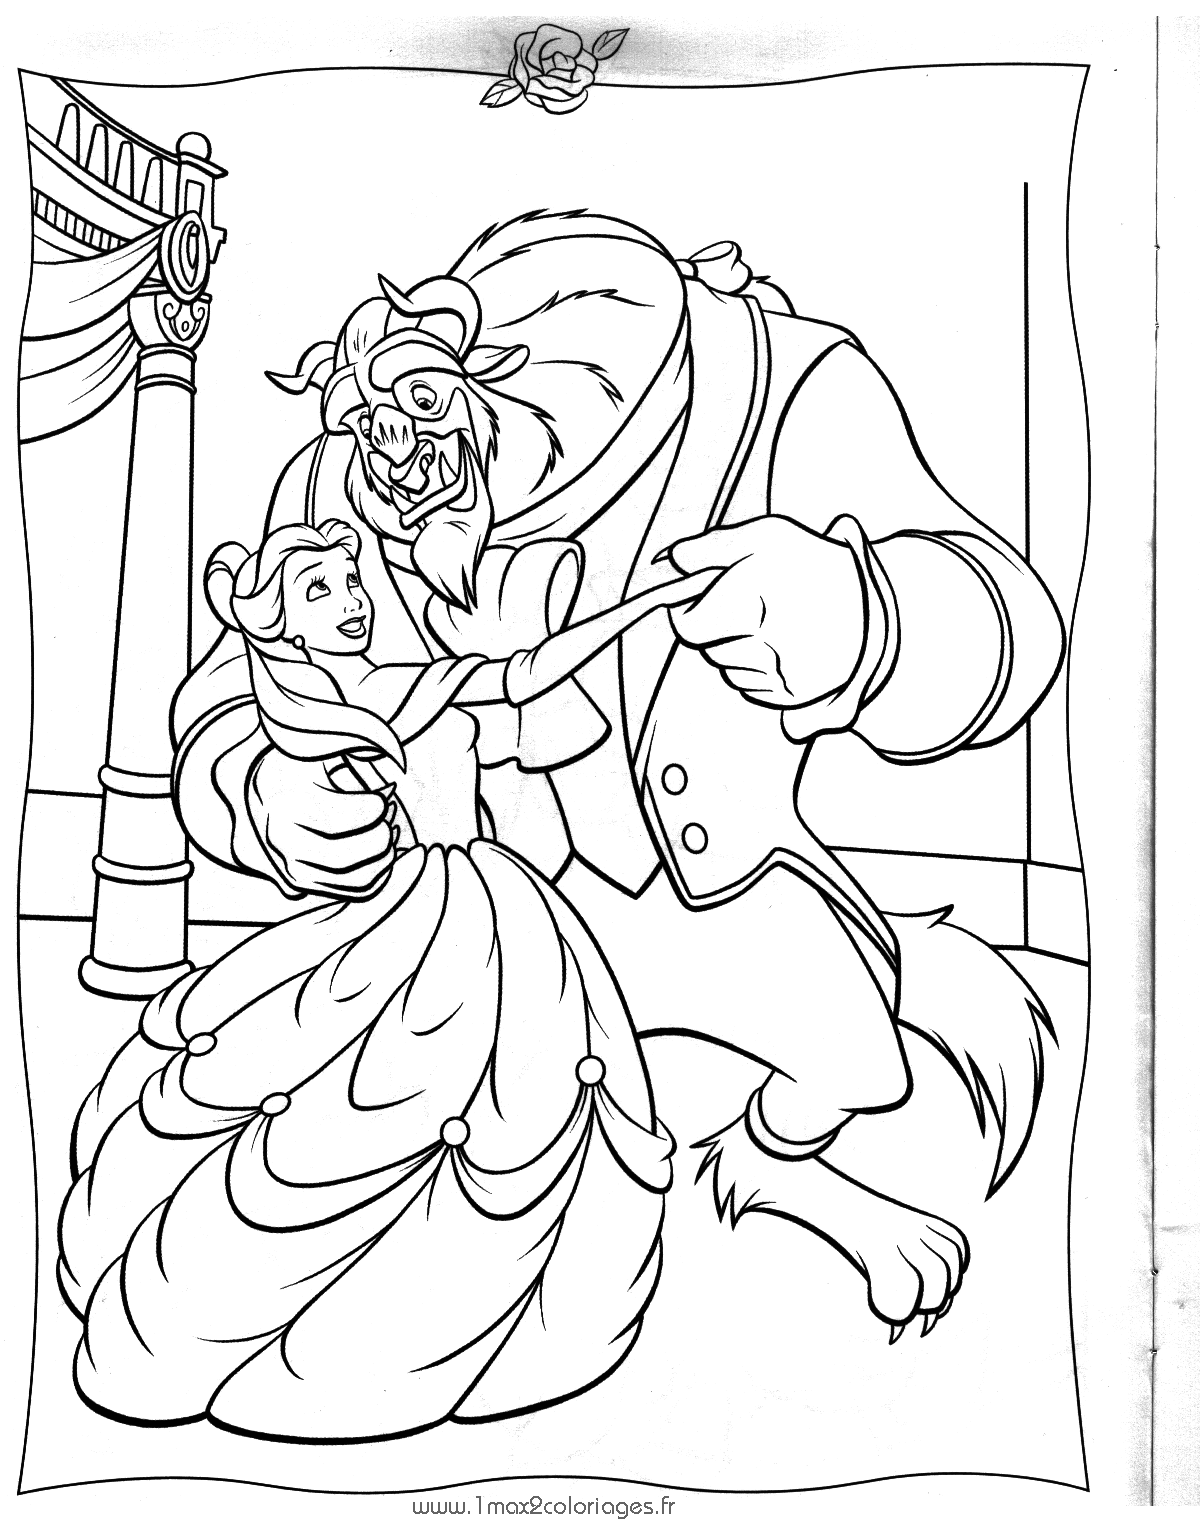 Раскраска: Красавица и чудовище (Анимационные фильмы) #131026 - Бесплатные раскраски для печати